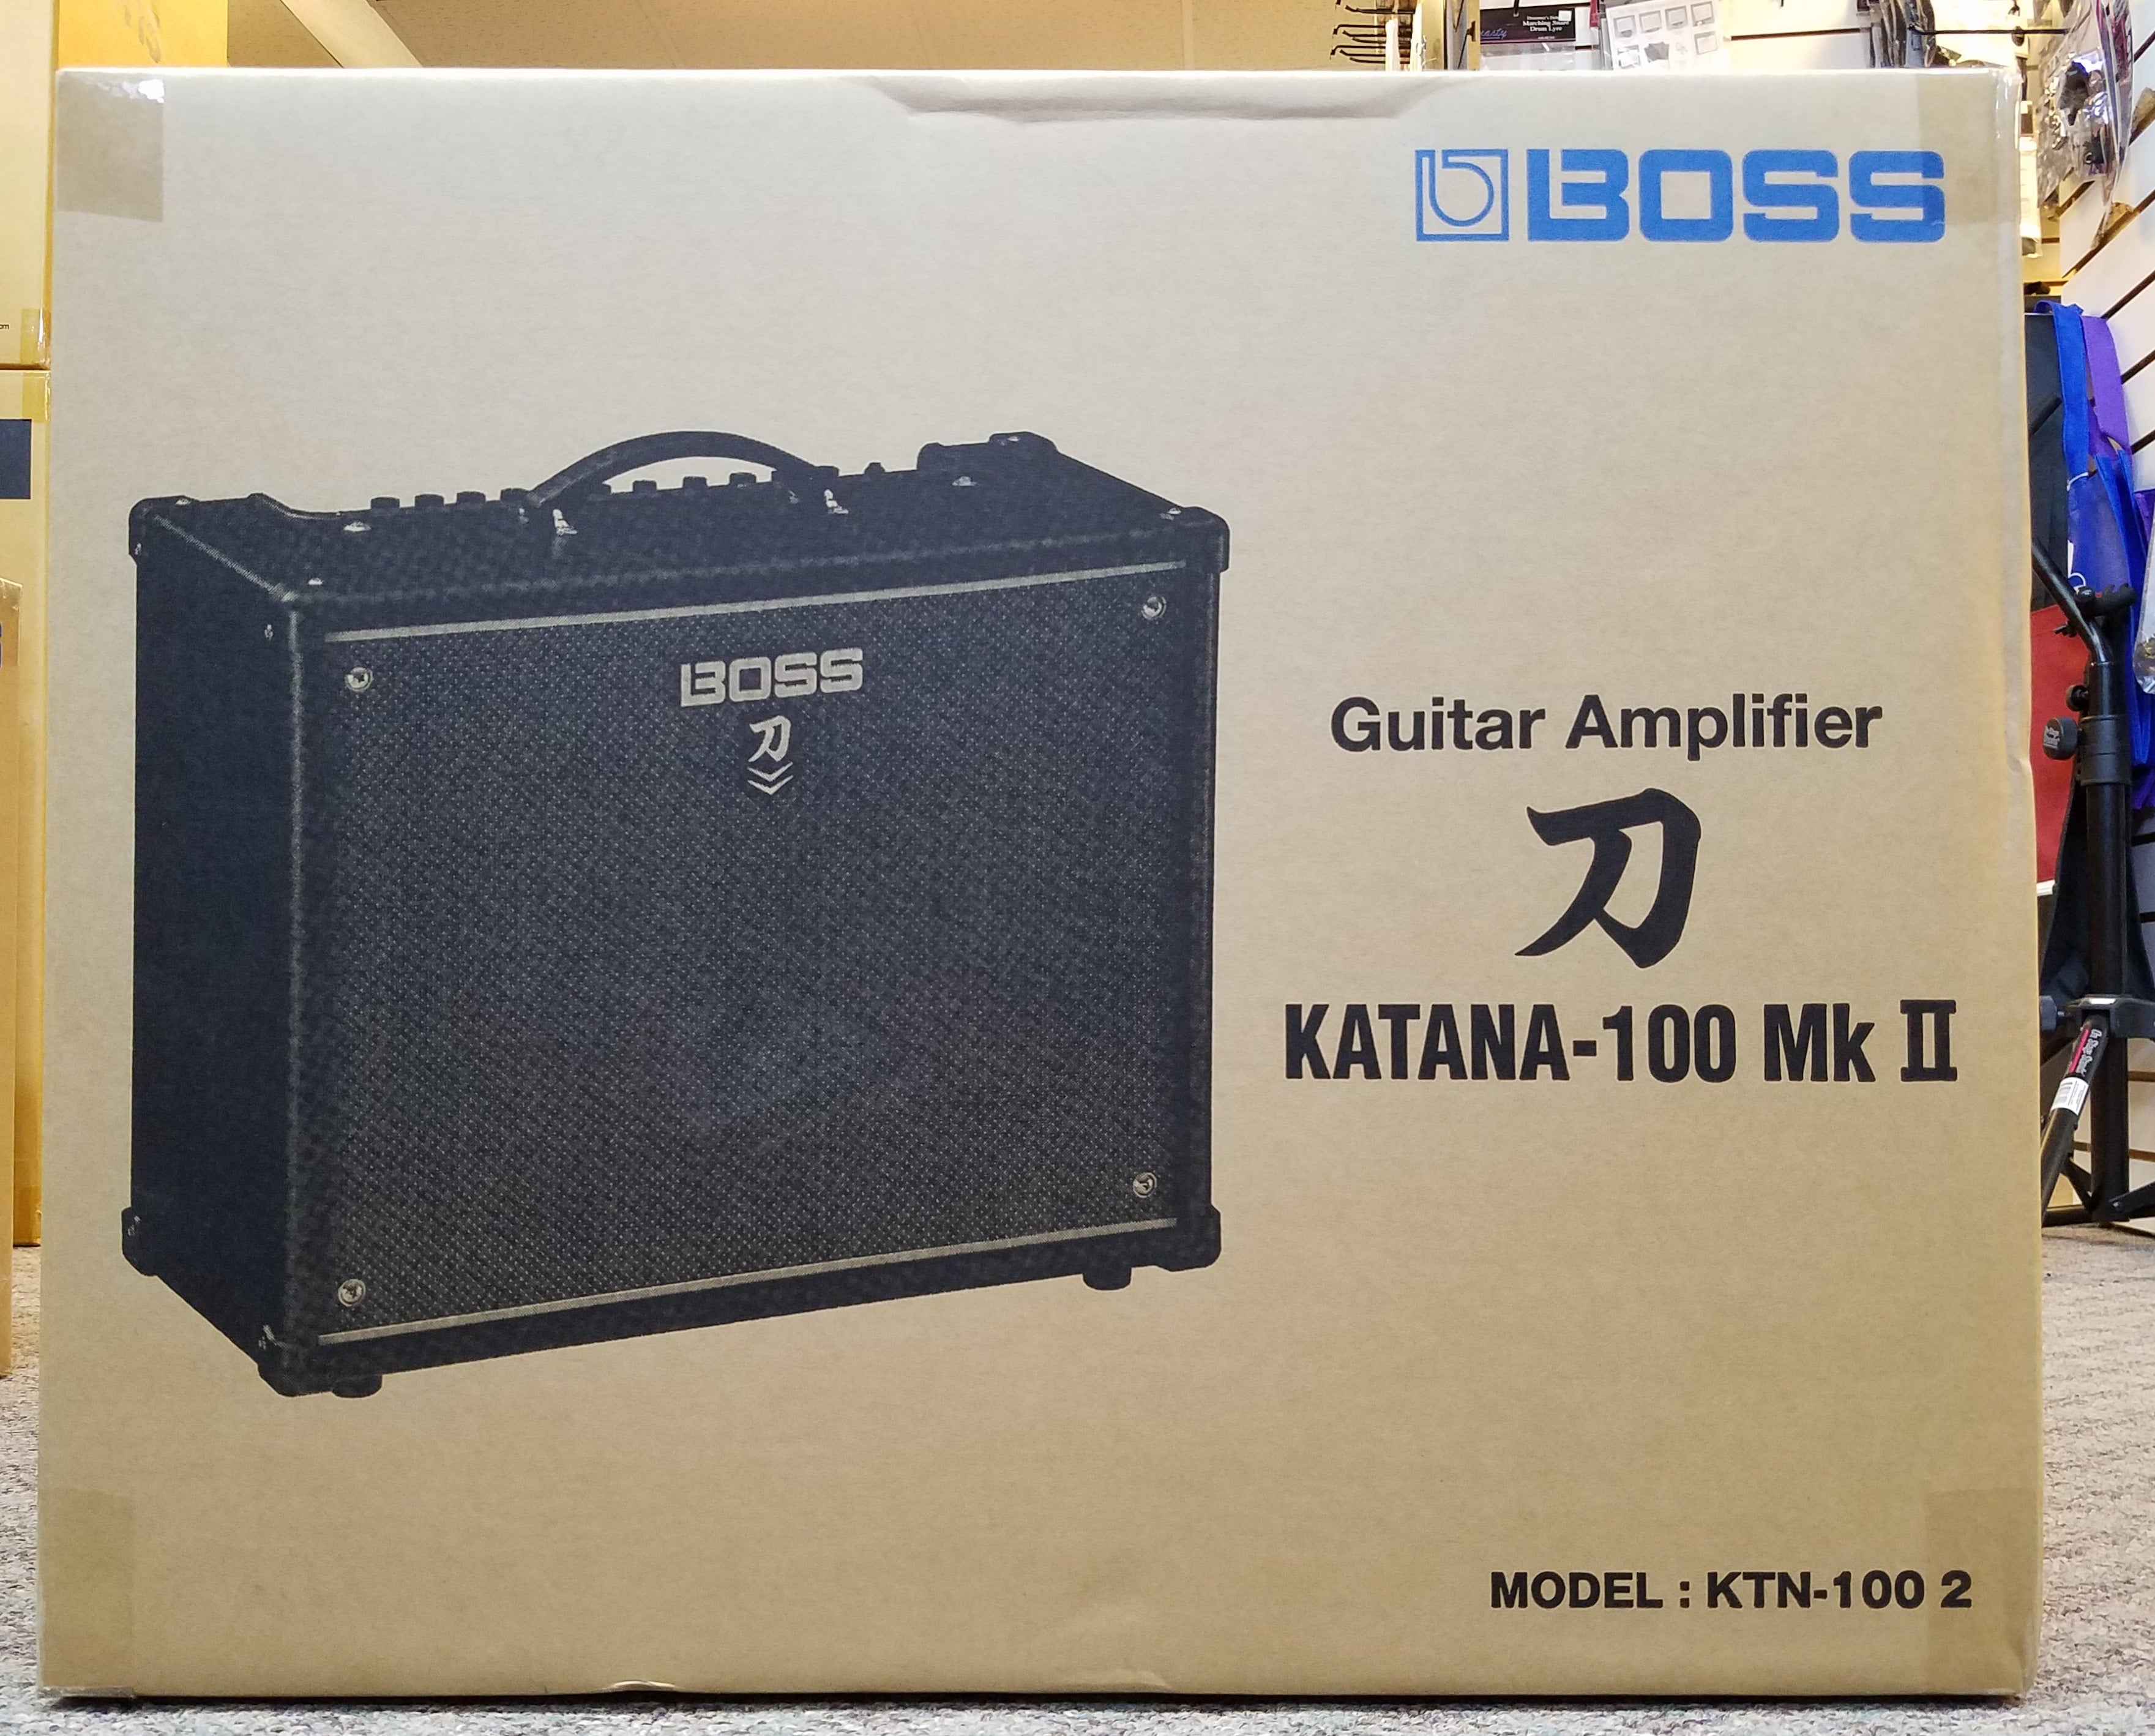 Boss Katana 100 Mk II Guitar Modeling Amplifier KTN-100 100 Watts 12" Speaker